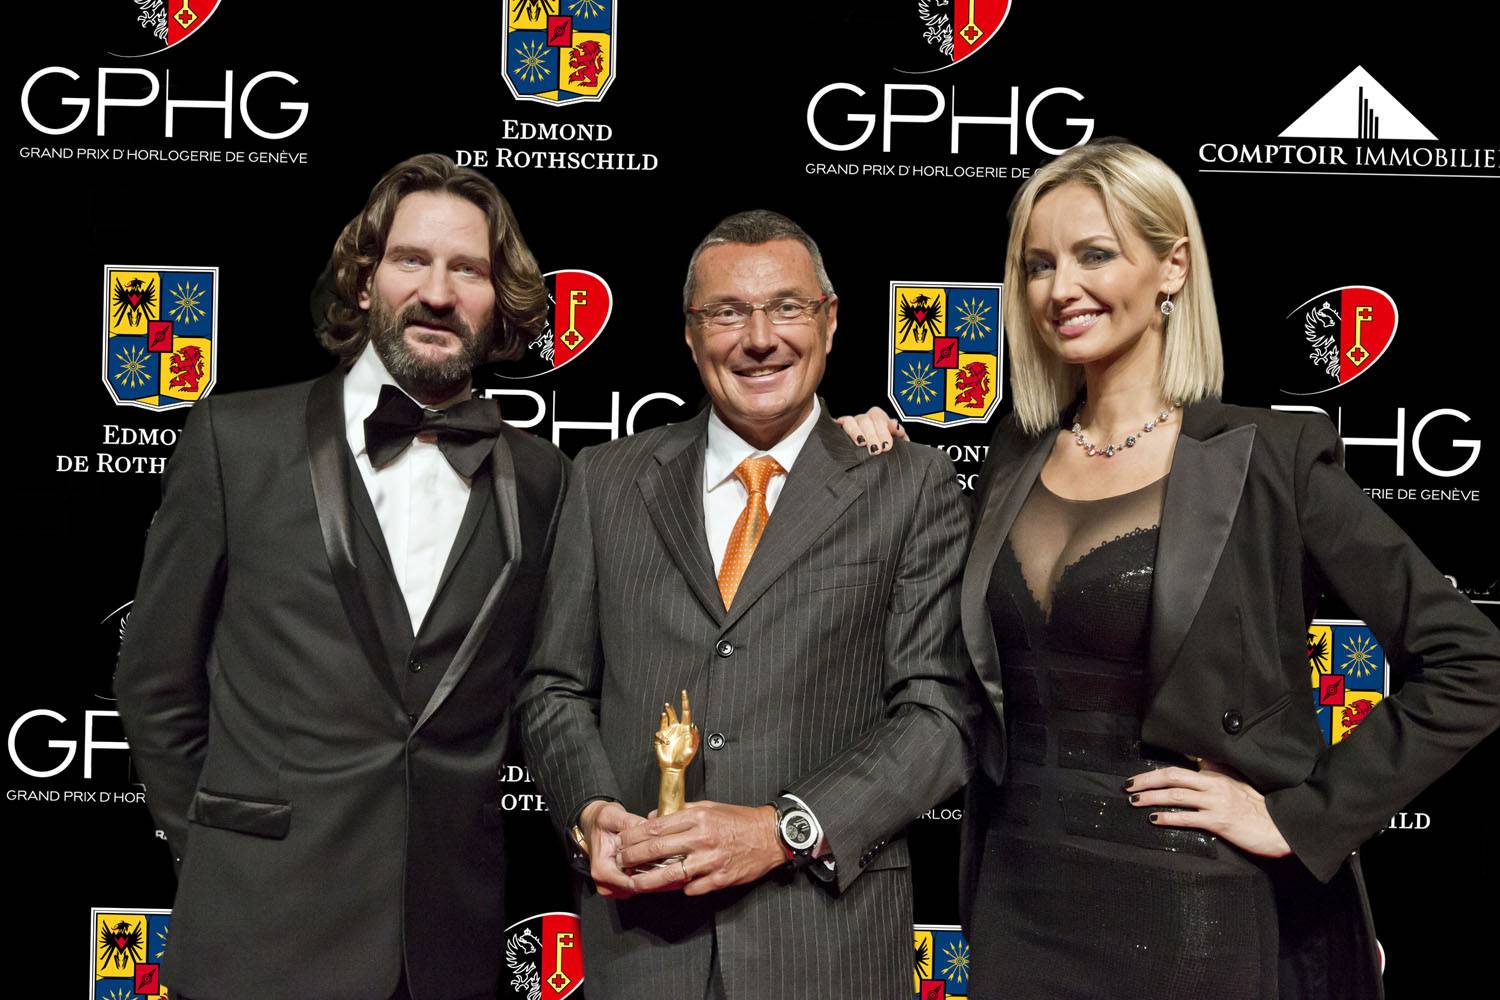 Jean-Christophe Babin, CEO de TAG Heuer, marque lauréate du Prix de l’Aiguille d’Or 2012, entouré de Frédéric Beigbeder et Adriana Karembeu